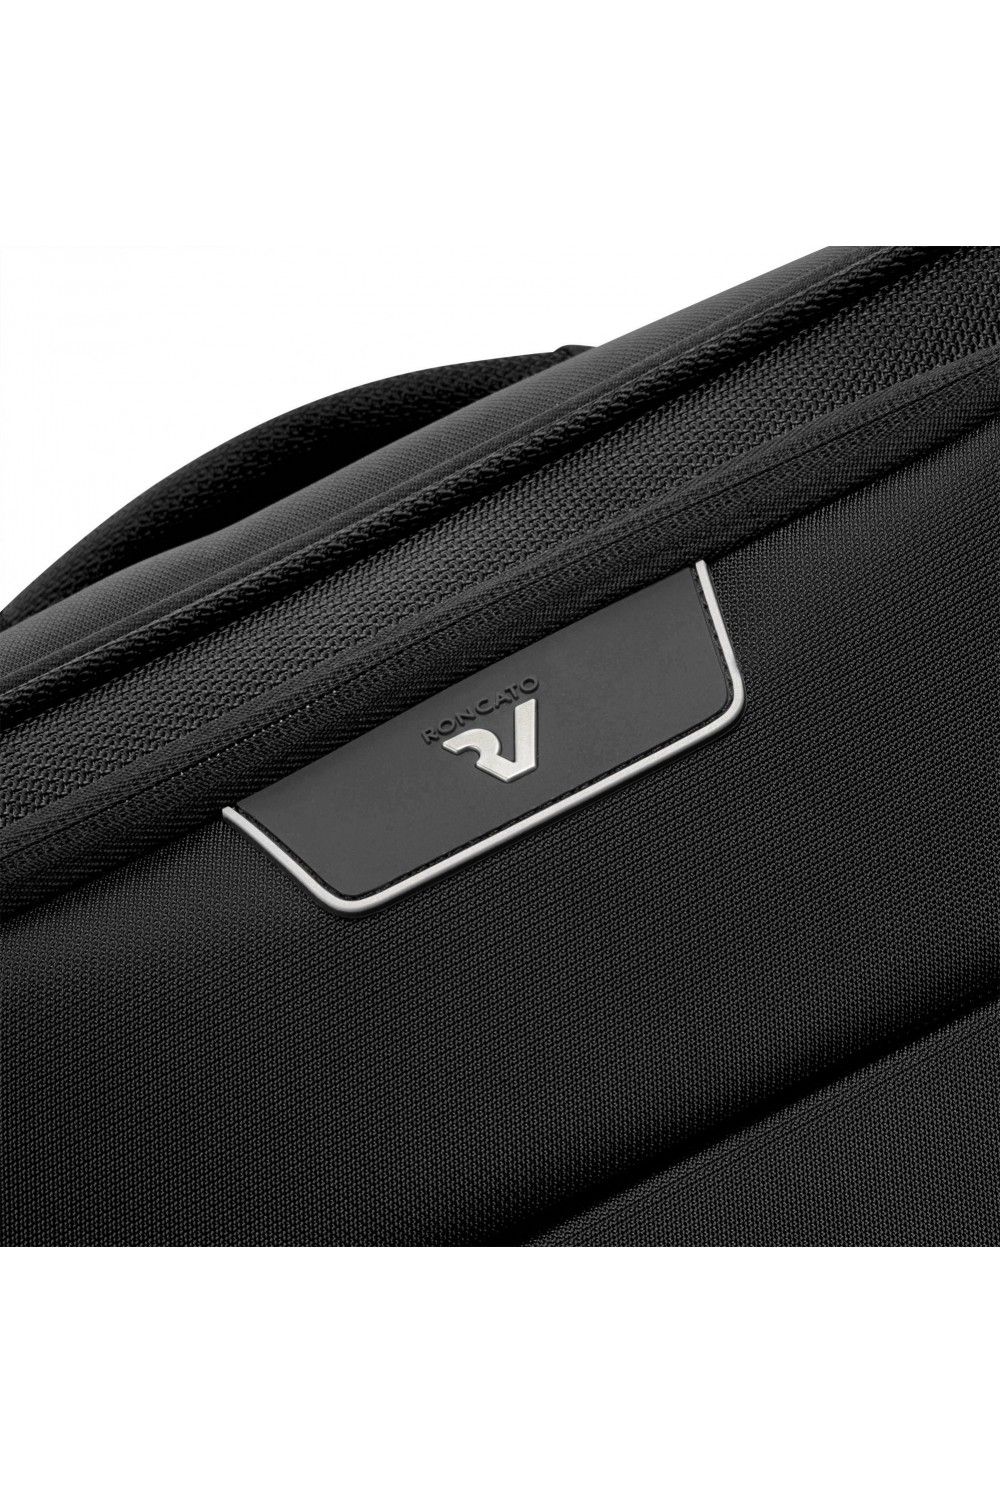 Hand luggage Roncato Joy 55cm 4 wheel USB